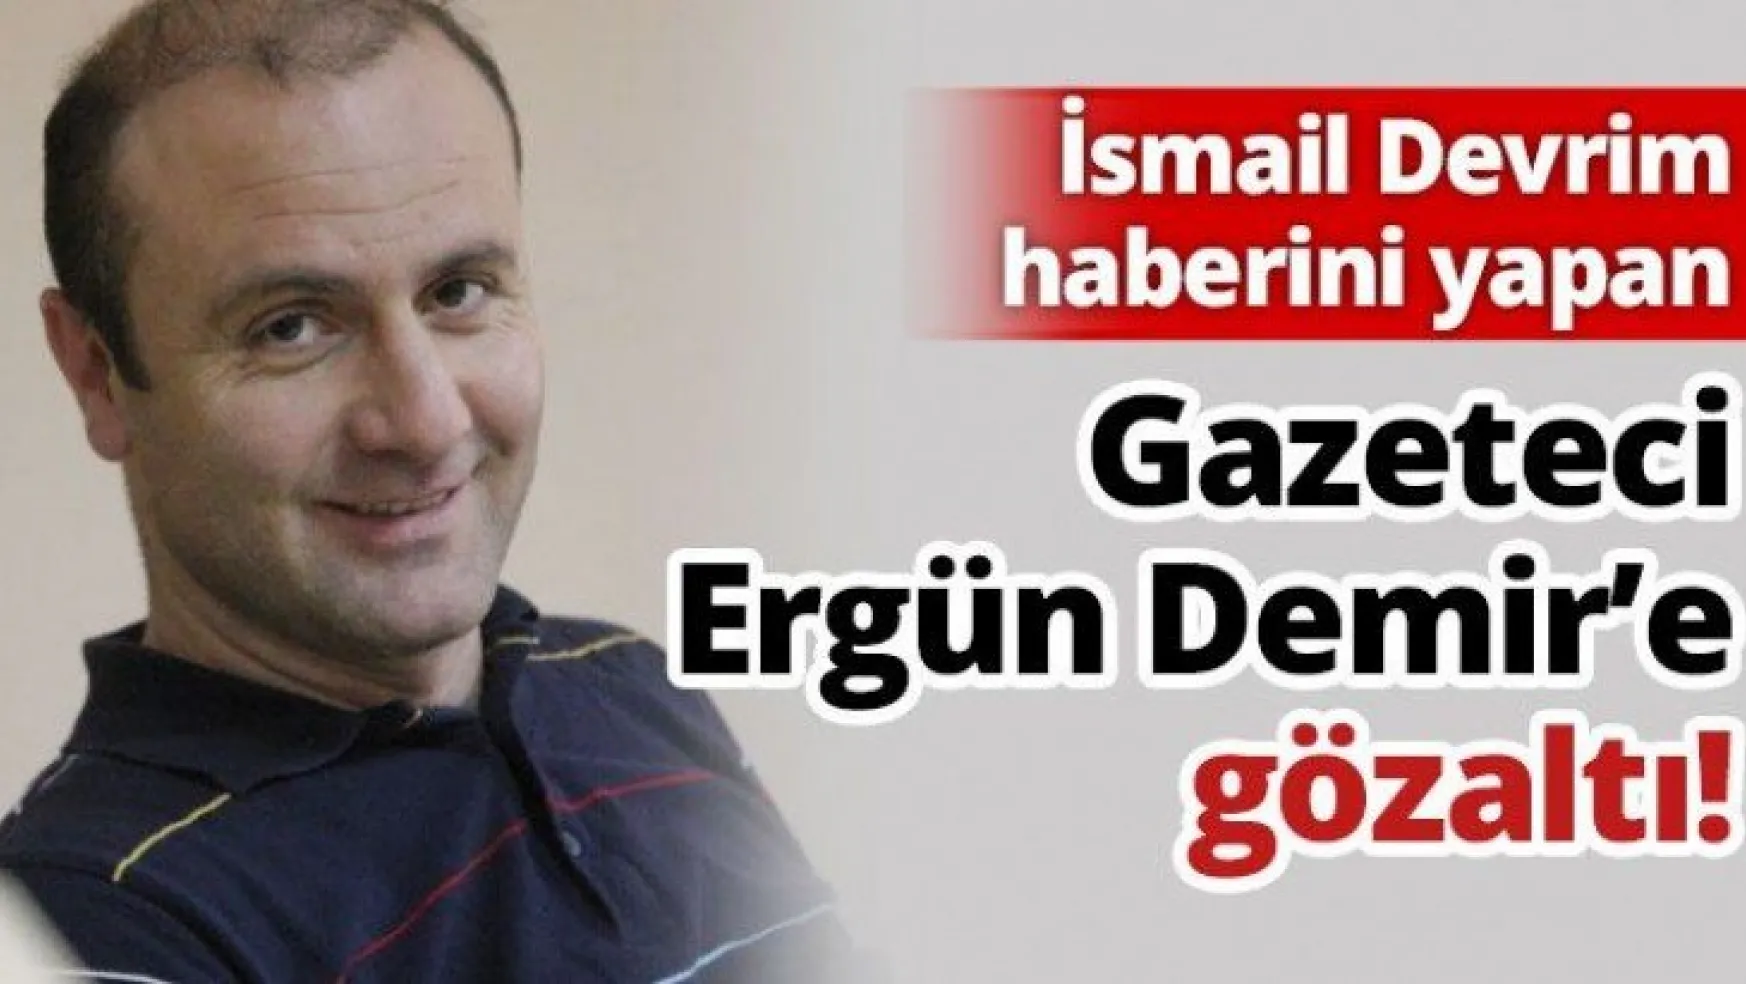 Gazeteci Ergün Demir'e gözaltı!